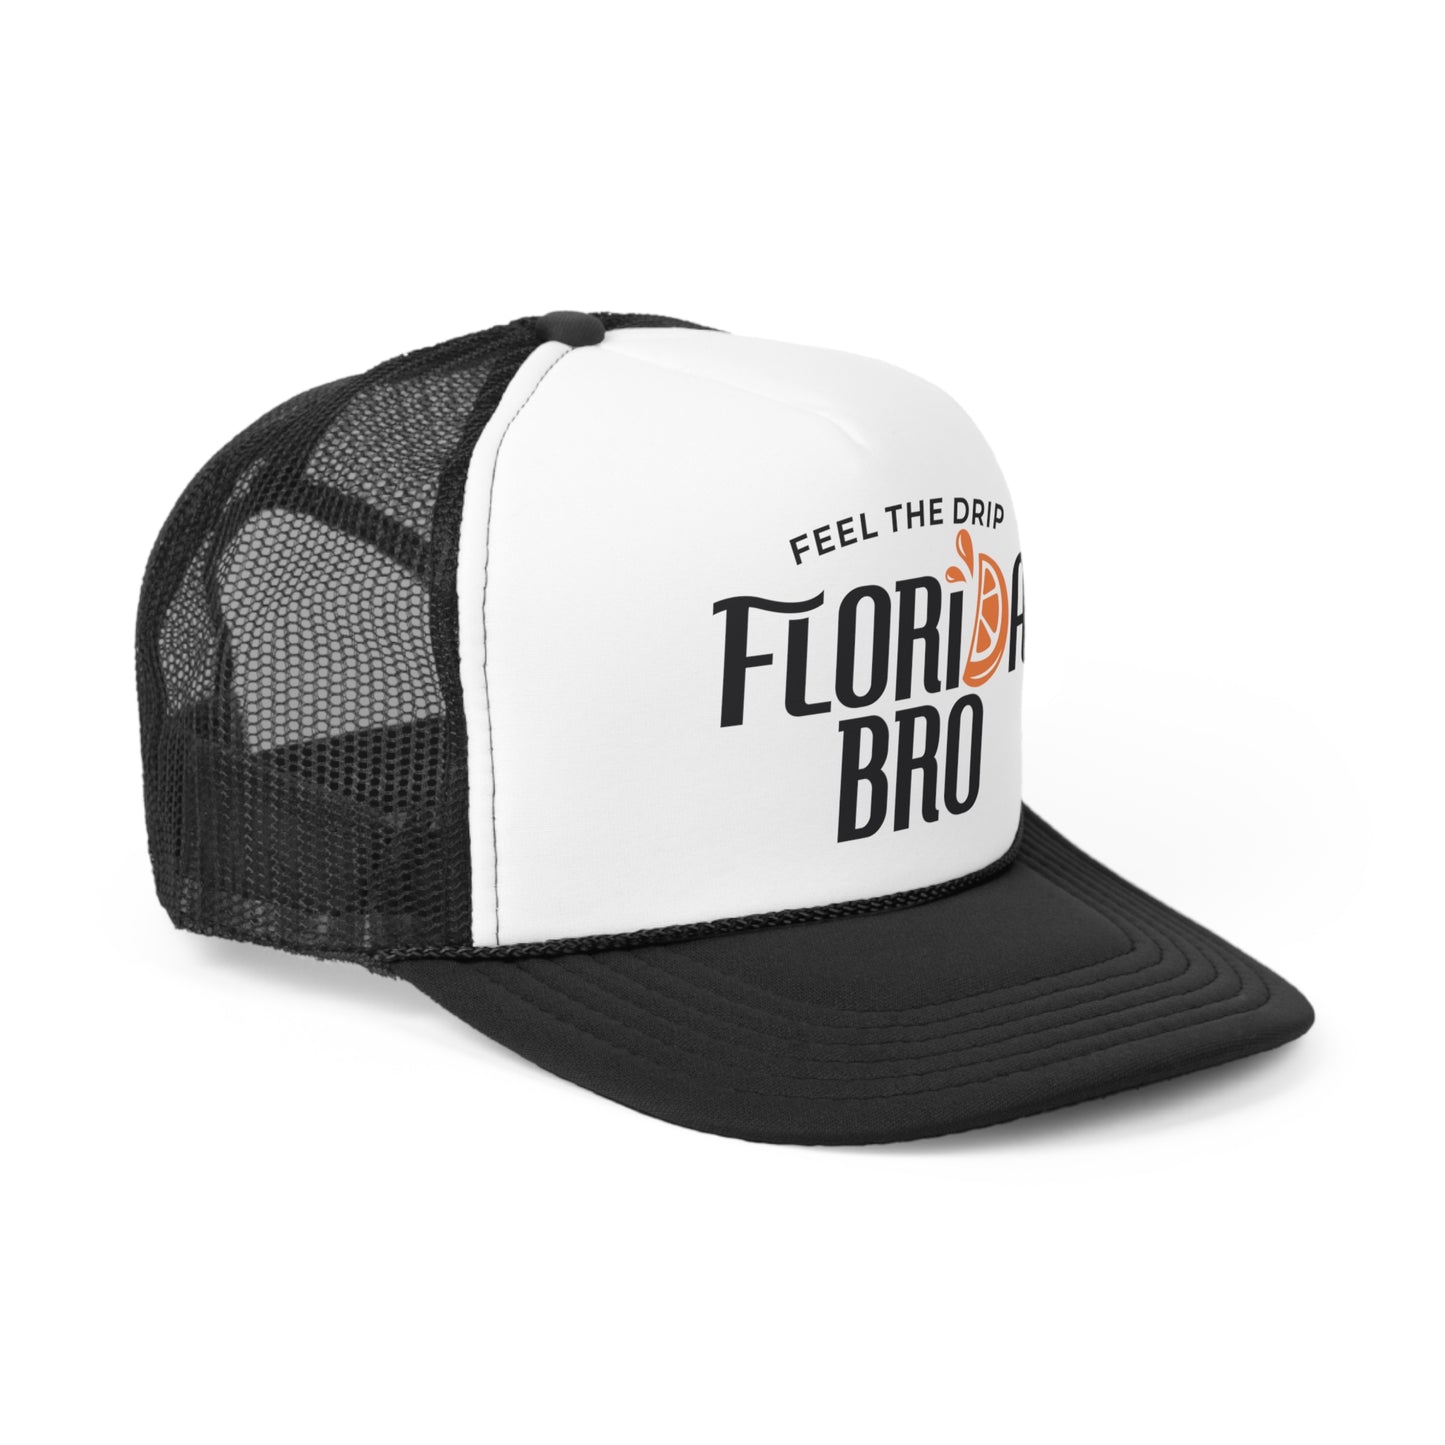 FLORIDA BRO - Florida Beach Trucker Cap